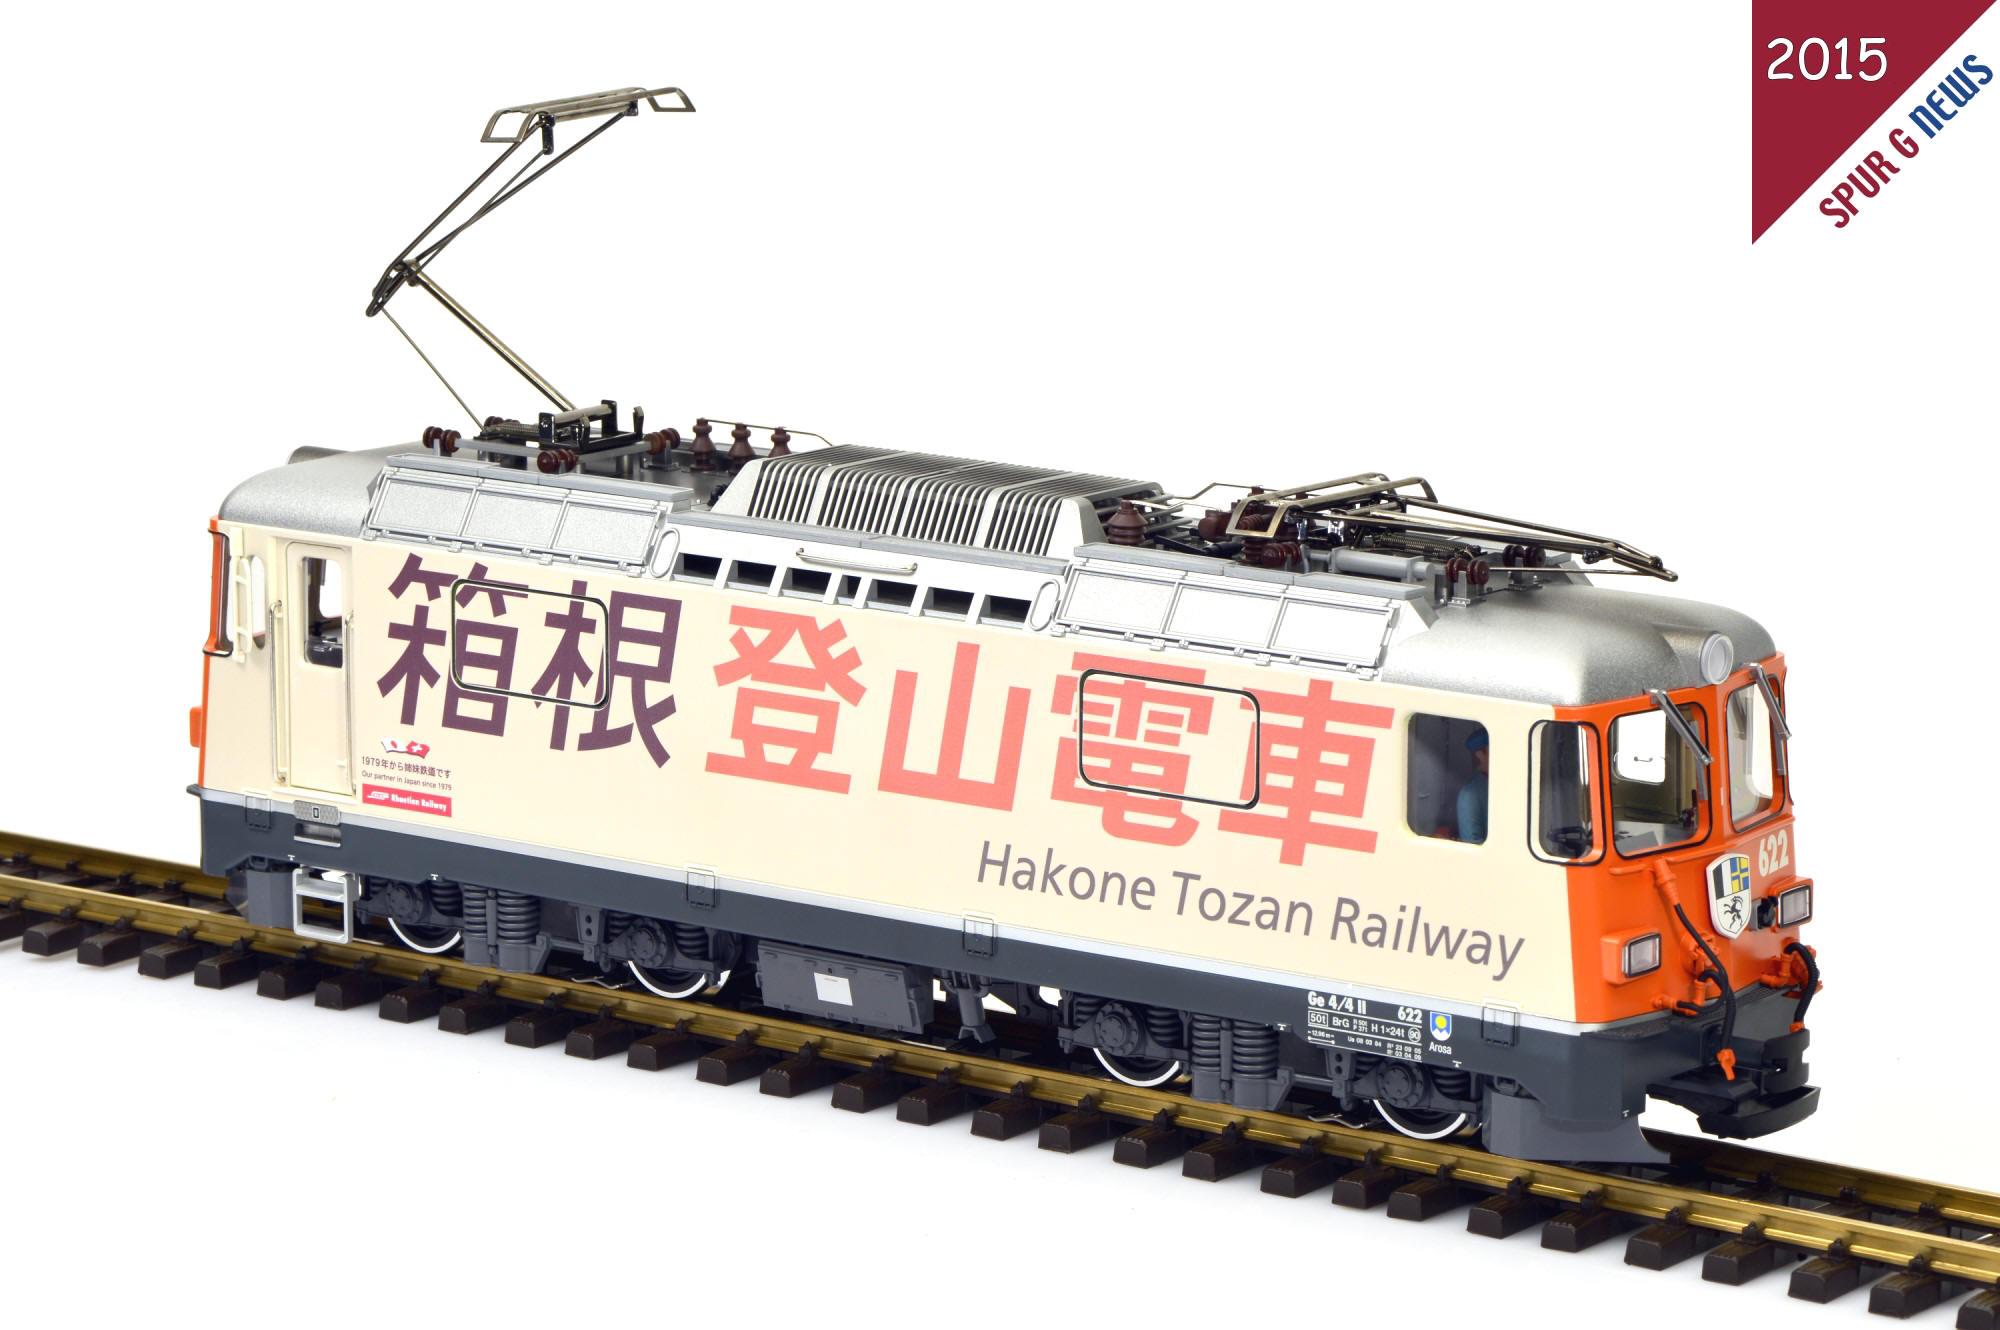 Hakone Tozan Railway - Modell einer Ge 4/4 II der RhB 